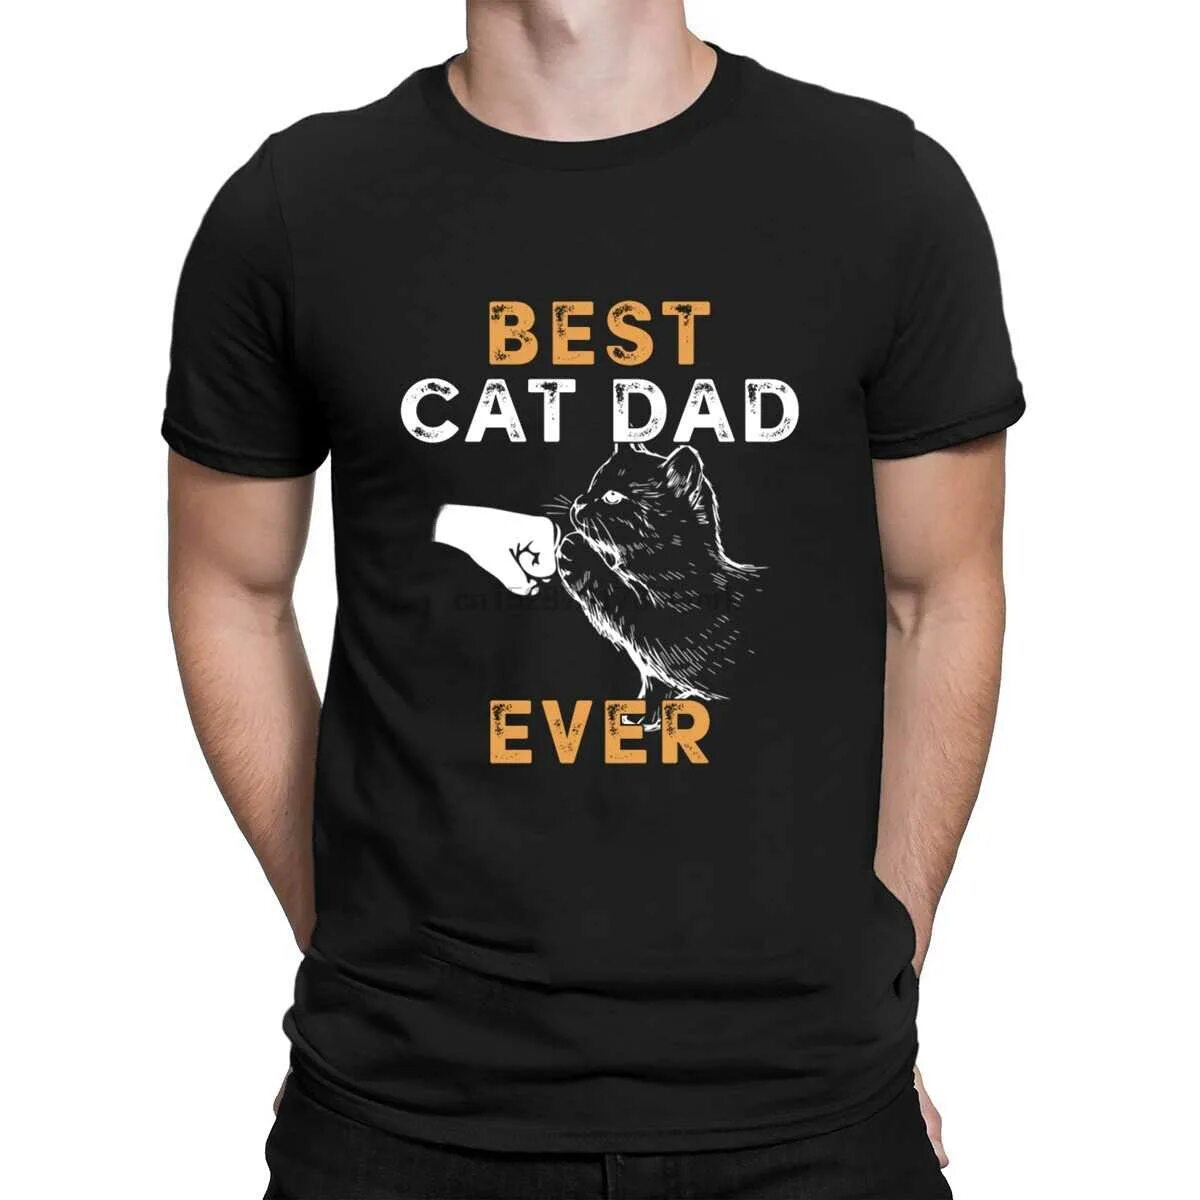 Best dad ever футболка. Футболка Cat dad. Best Cat dad ever. Cat daddy